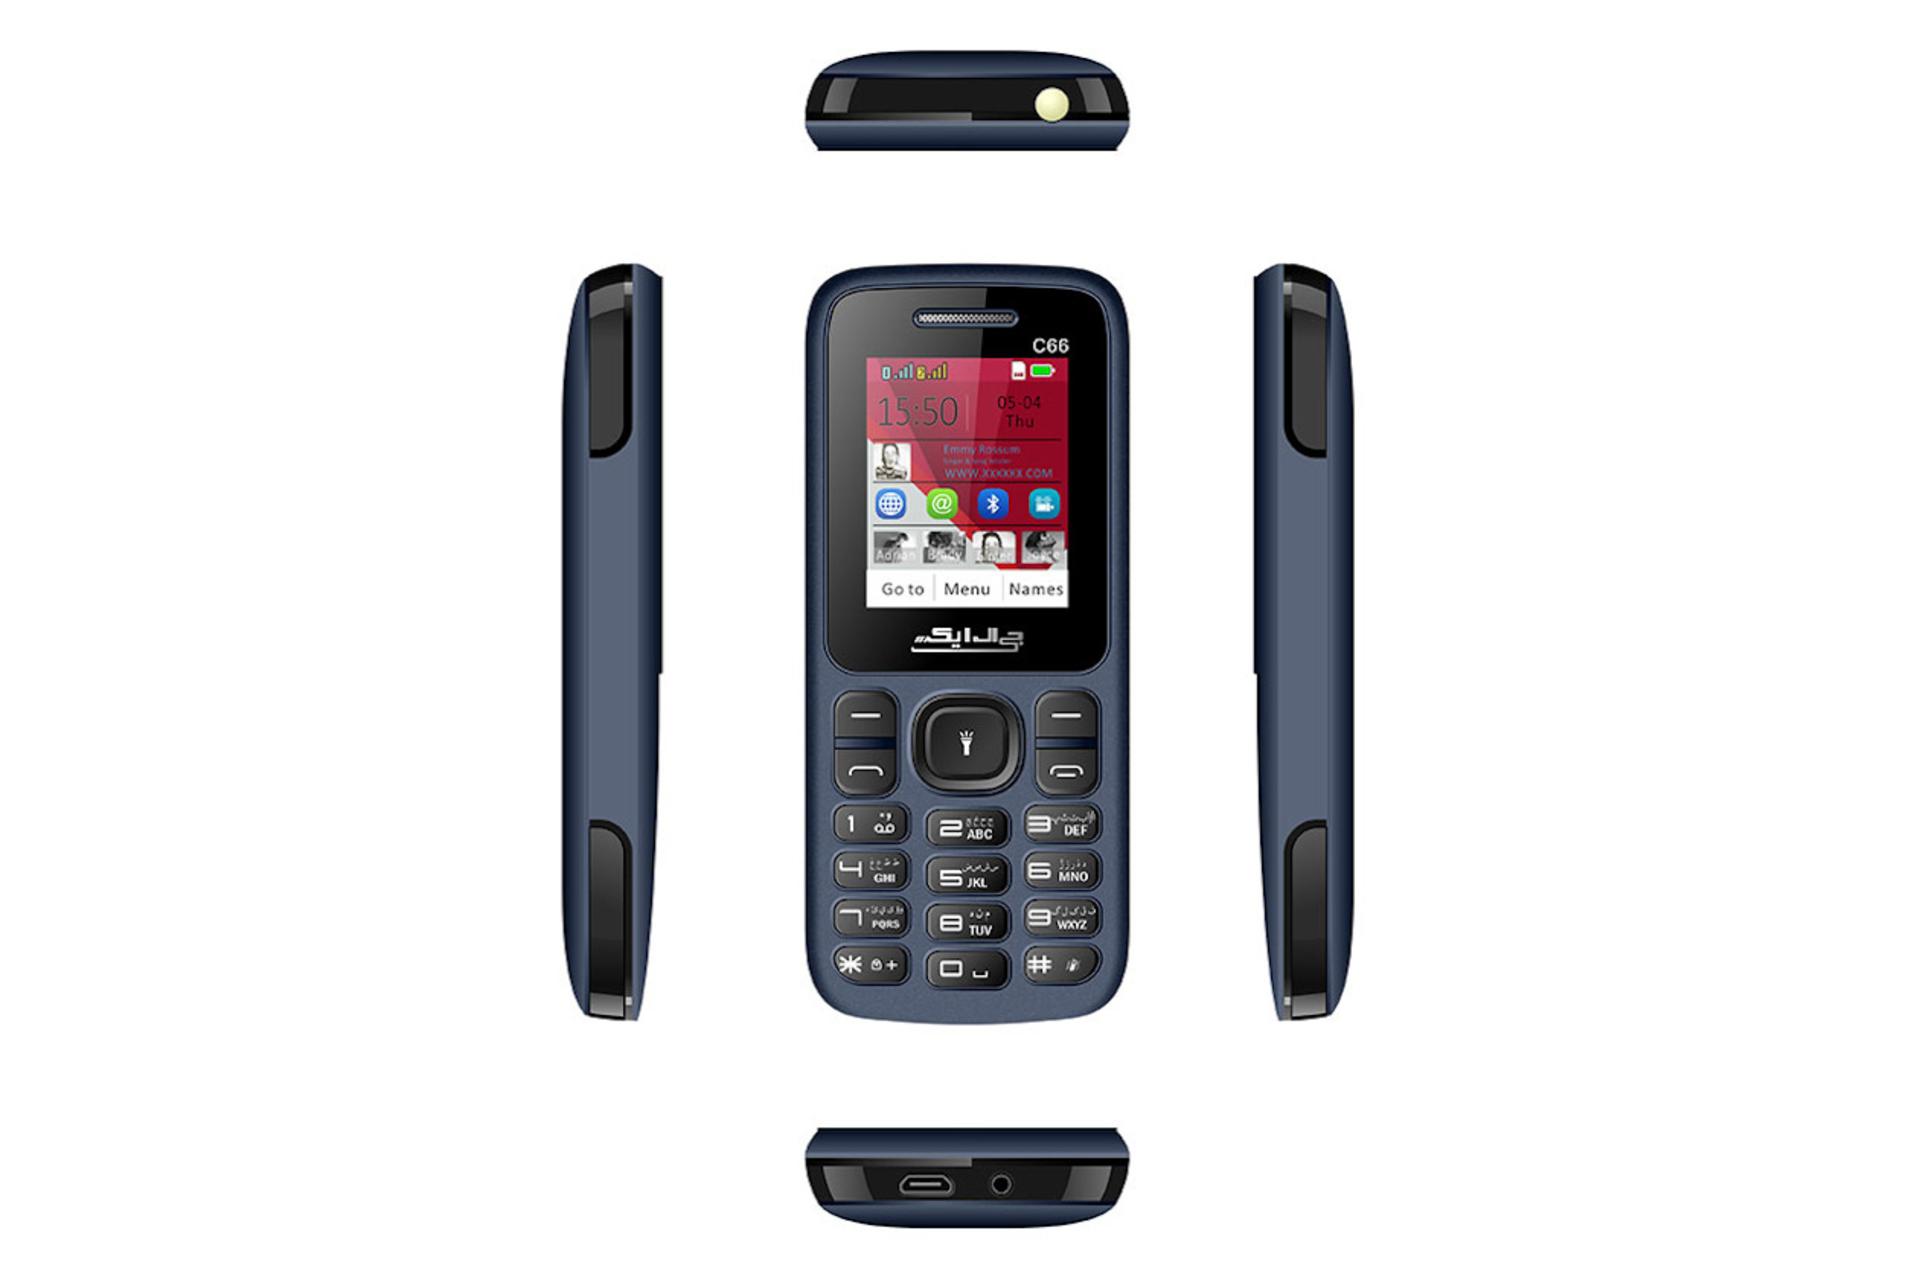 زوایای مختلف گوشی موبایل C66 جی ال ایکس / GLX C66 آبی